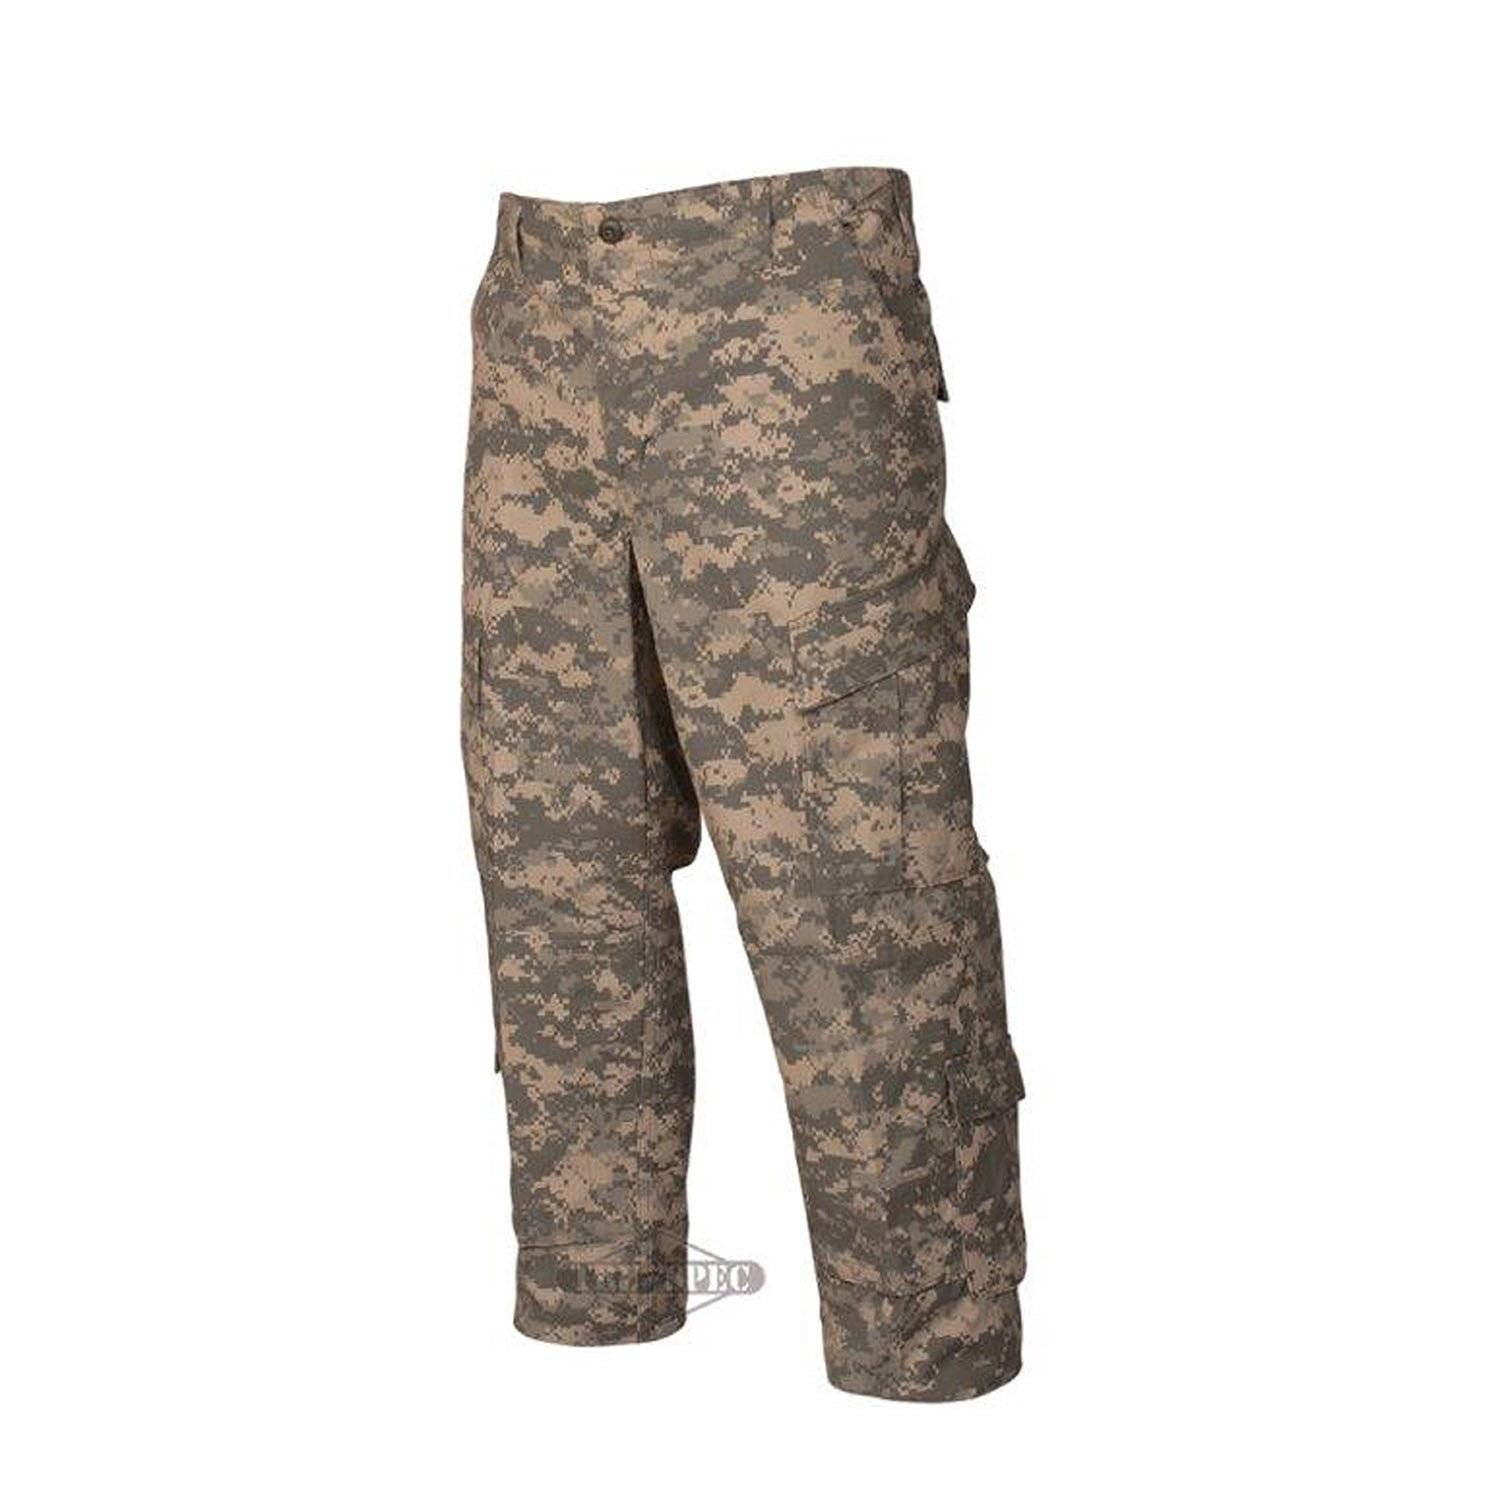 Tru-Spec ACU US Army Combat Uniform Digital Camo Nyco Ripstop BDU Pants.